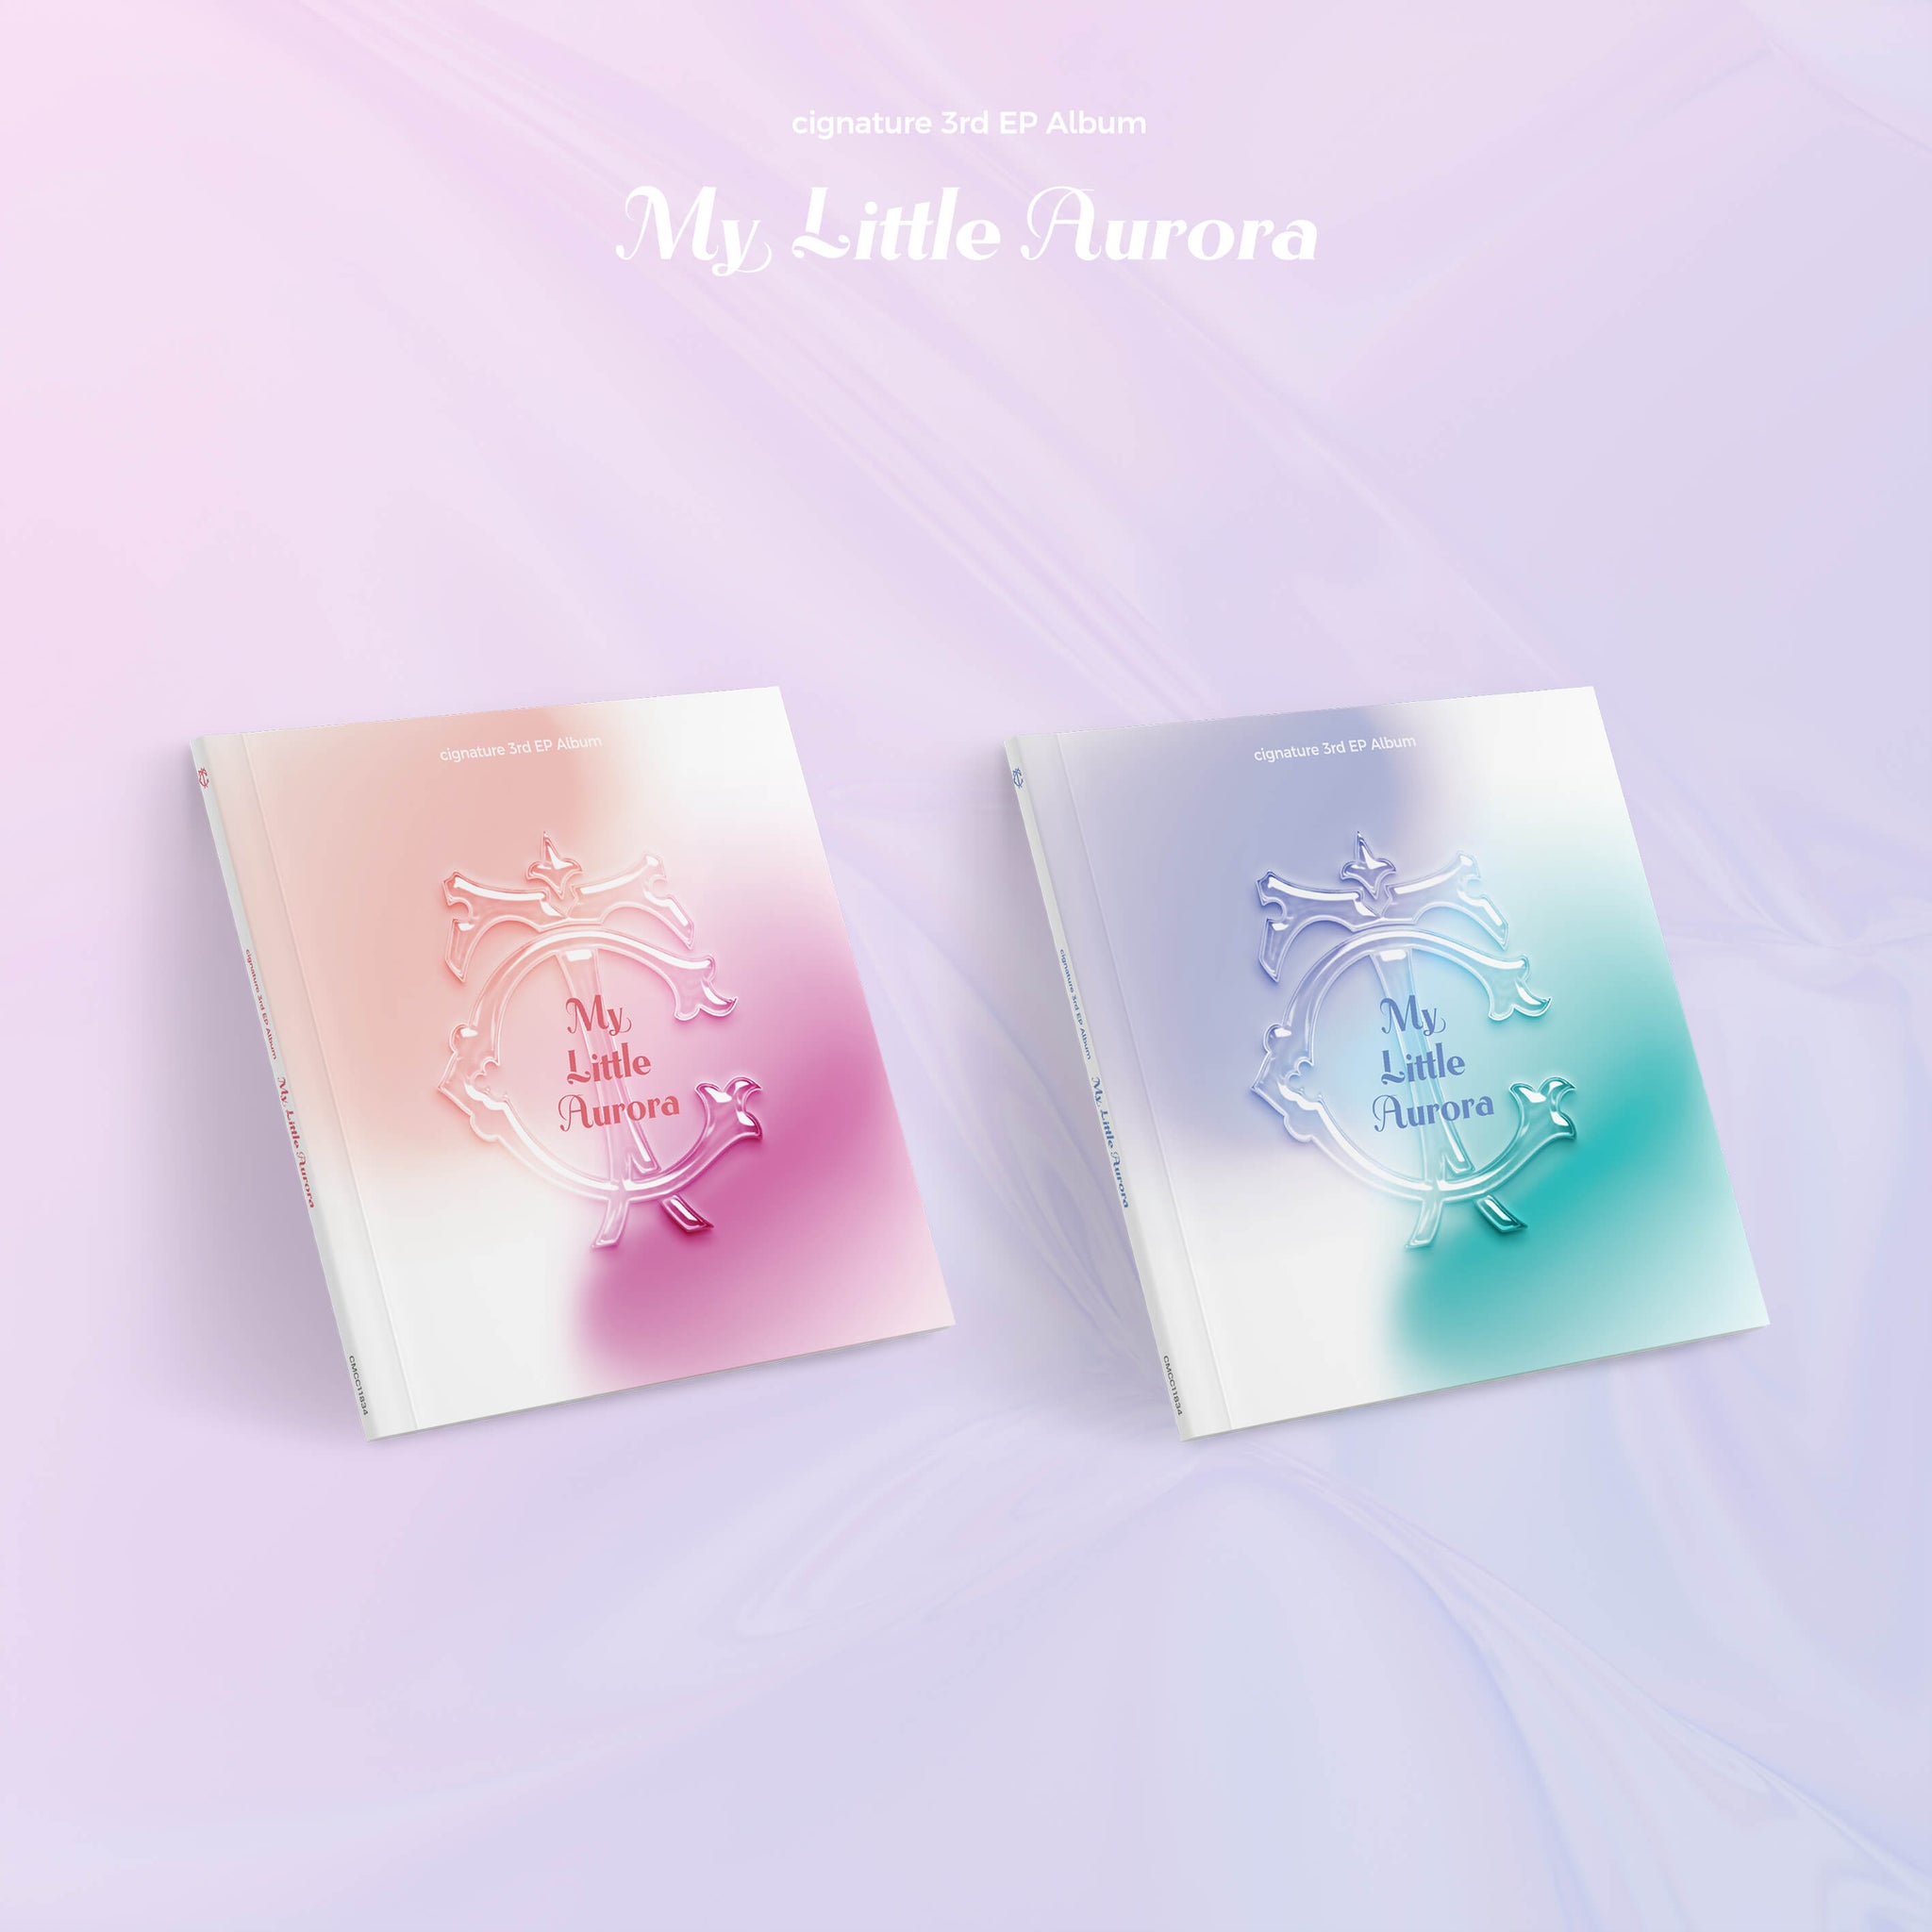 cignature 3rd Mini Album My Little Aurora - Saturn / Jupiter Version